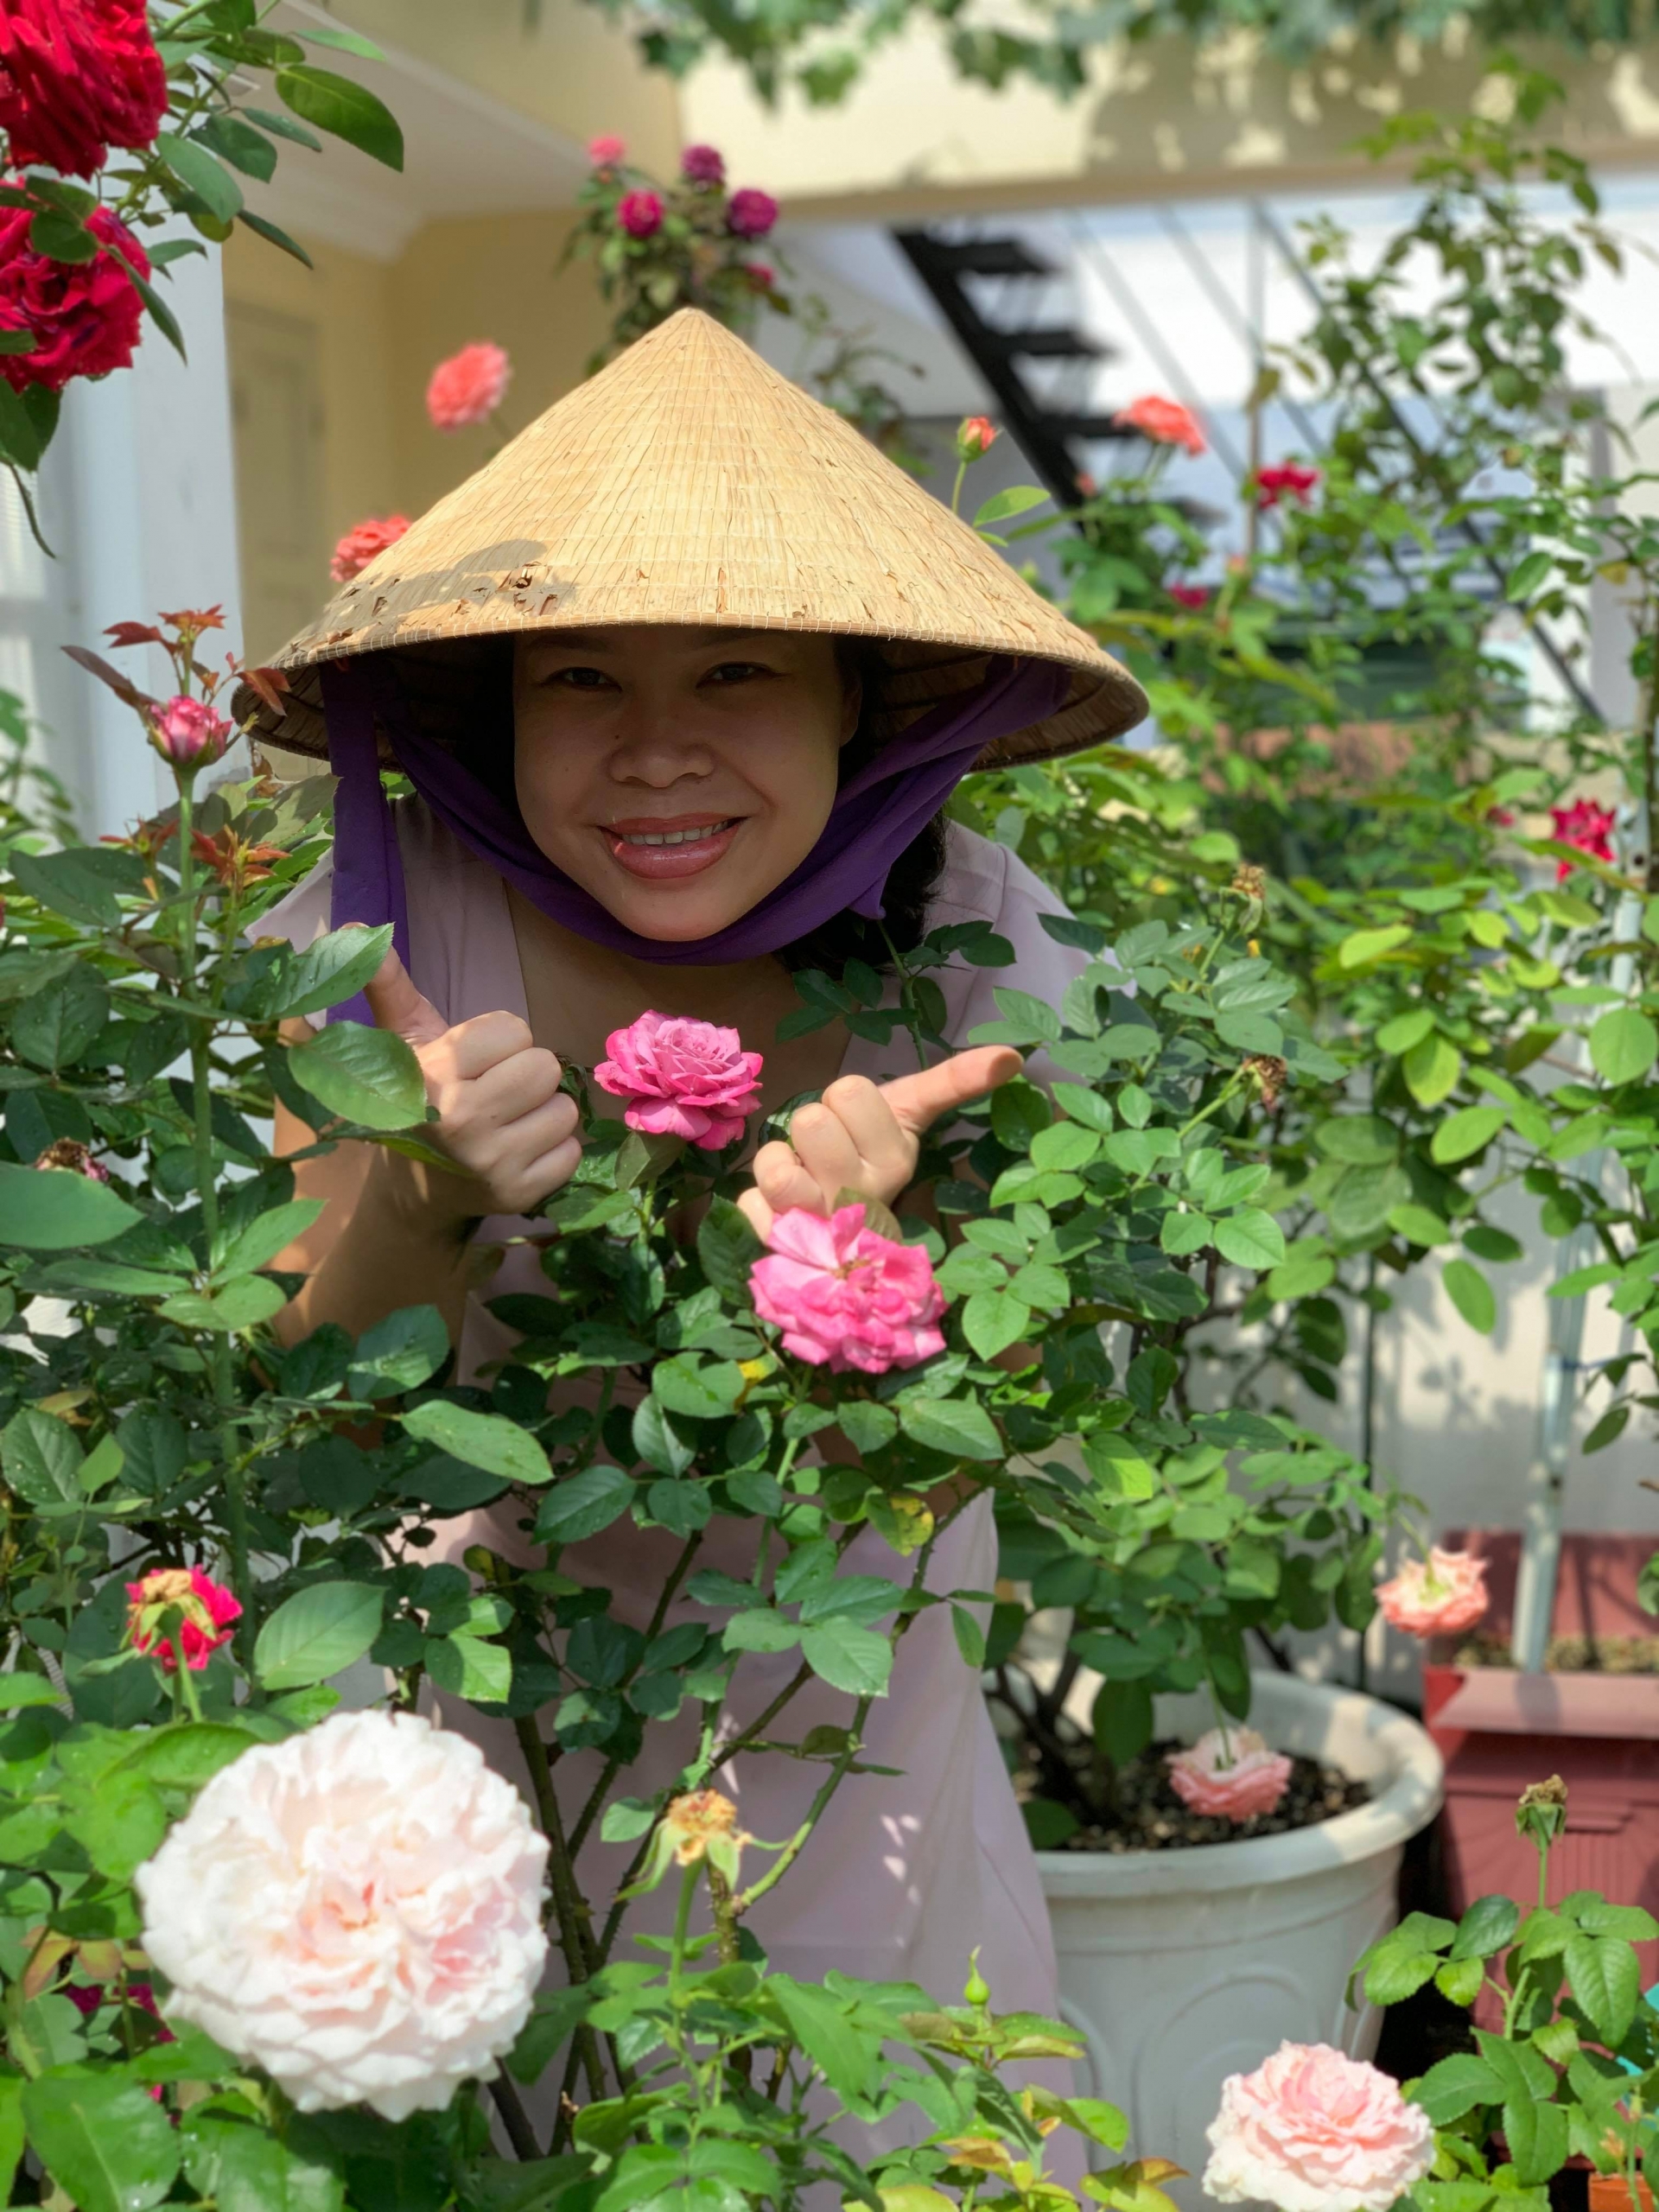 Vườn hồng trên sân thượng đẹp Việt Nam - Muôn ánh màu hồng rực rỡ từ những bông hoa hồng trên sân thượng đã đem đến không gian tuyệt vời cho bất kỳ ai muốn trốn khỏi thị trấn nhộn nhịp. Với vườn hồng trên sân thượng đẹp Việt Nam này, bạn sẽ được thưởng thức những cảnh quan tuyệt đẹp và thư giãn sau một ngày dài làm việc. Nhấp chuột xem hình ảnh để tận hưởng một chuyến phiêu lưu đầy ấn tượng trên sân thượng của Việt Nam.